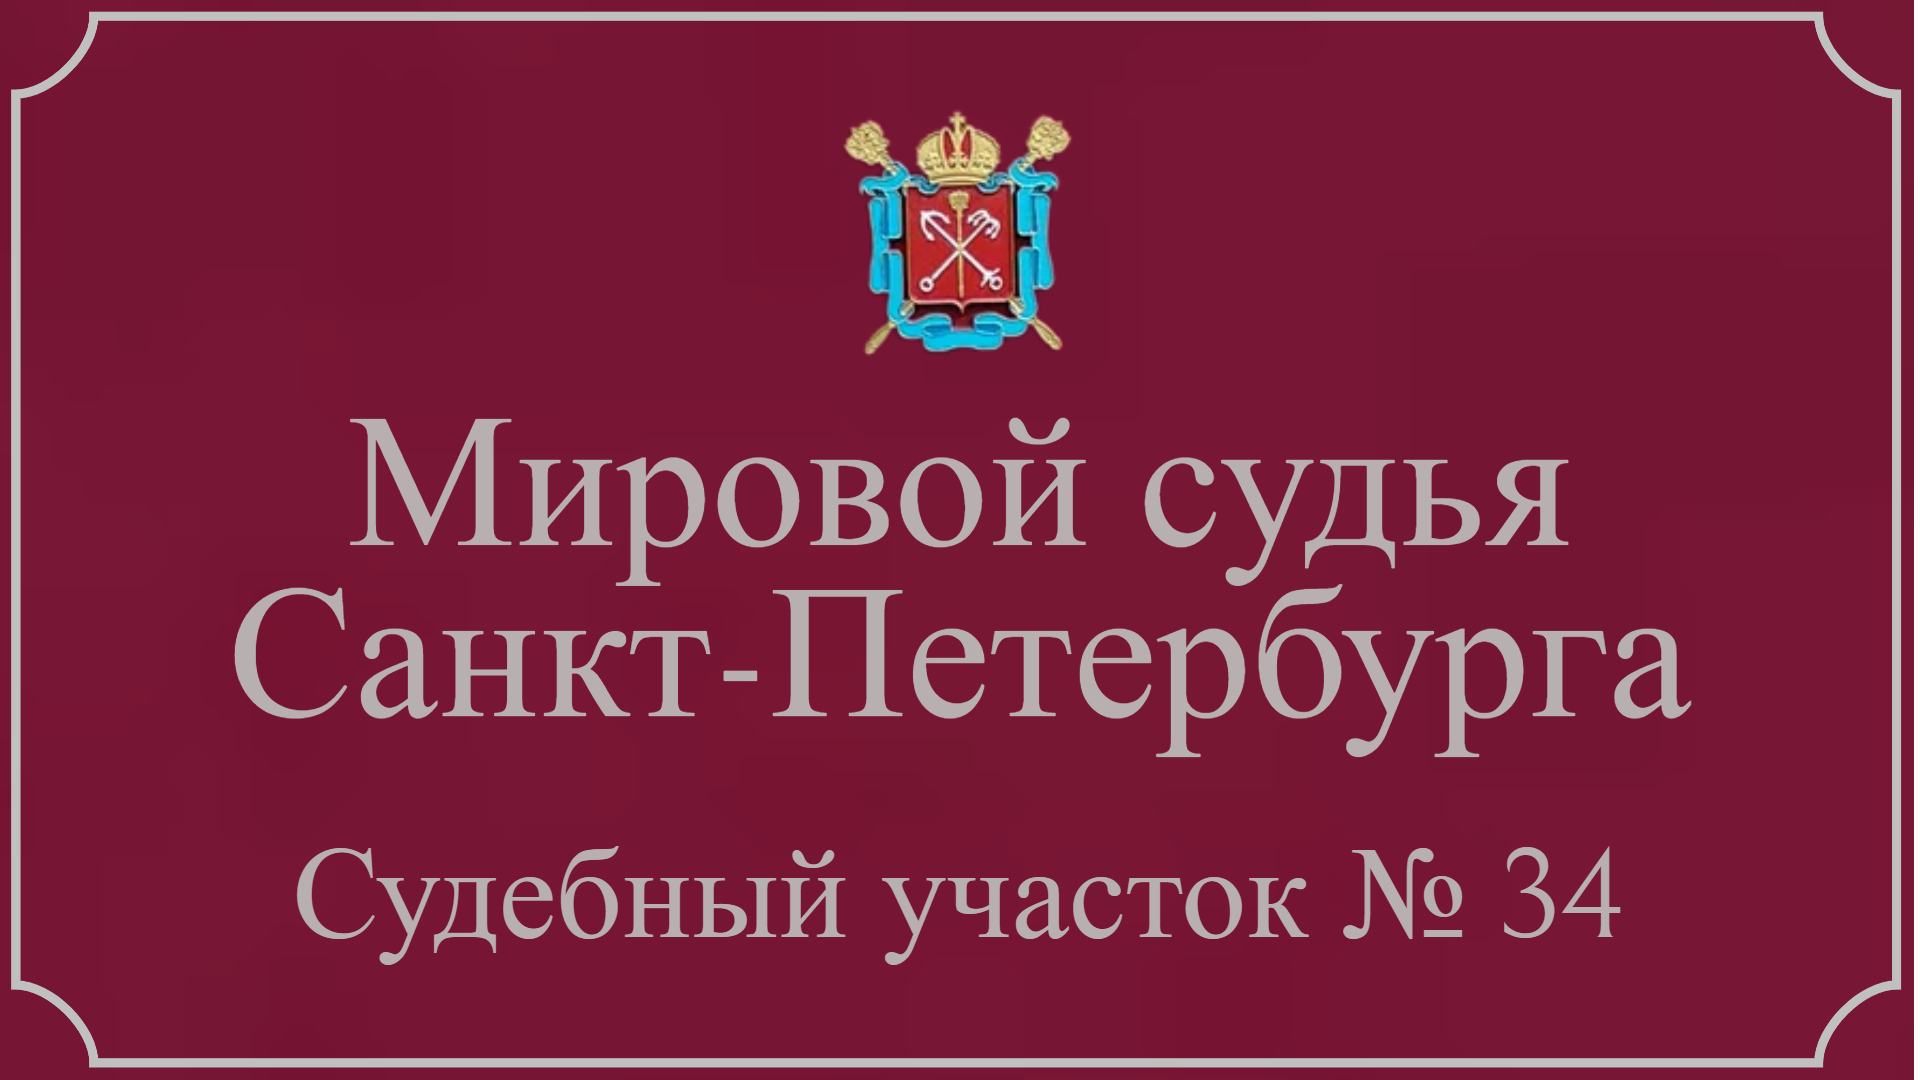 Информация по 34 судебному участку в Санкт-Петербурге.